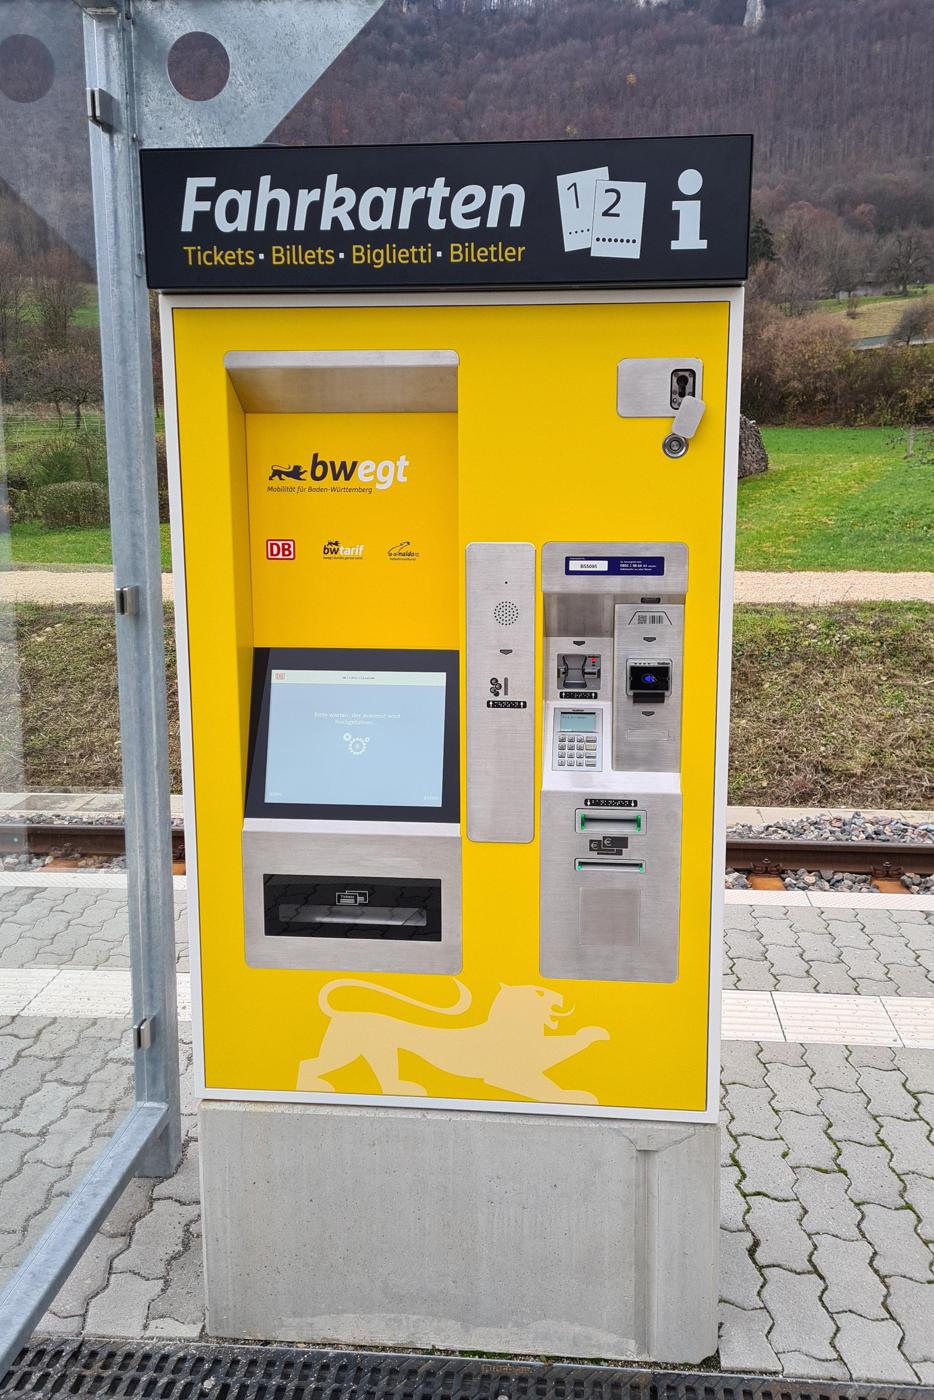 Ein Fahrkartenautomat im neuen gelb-weißen Landesdesign.